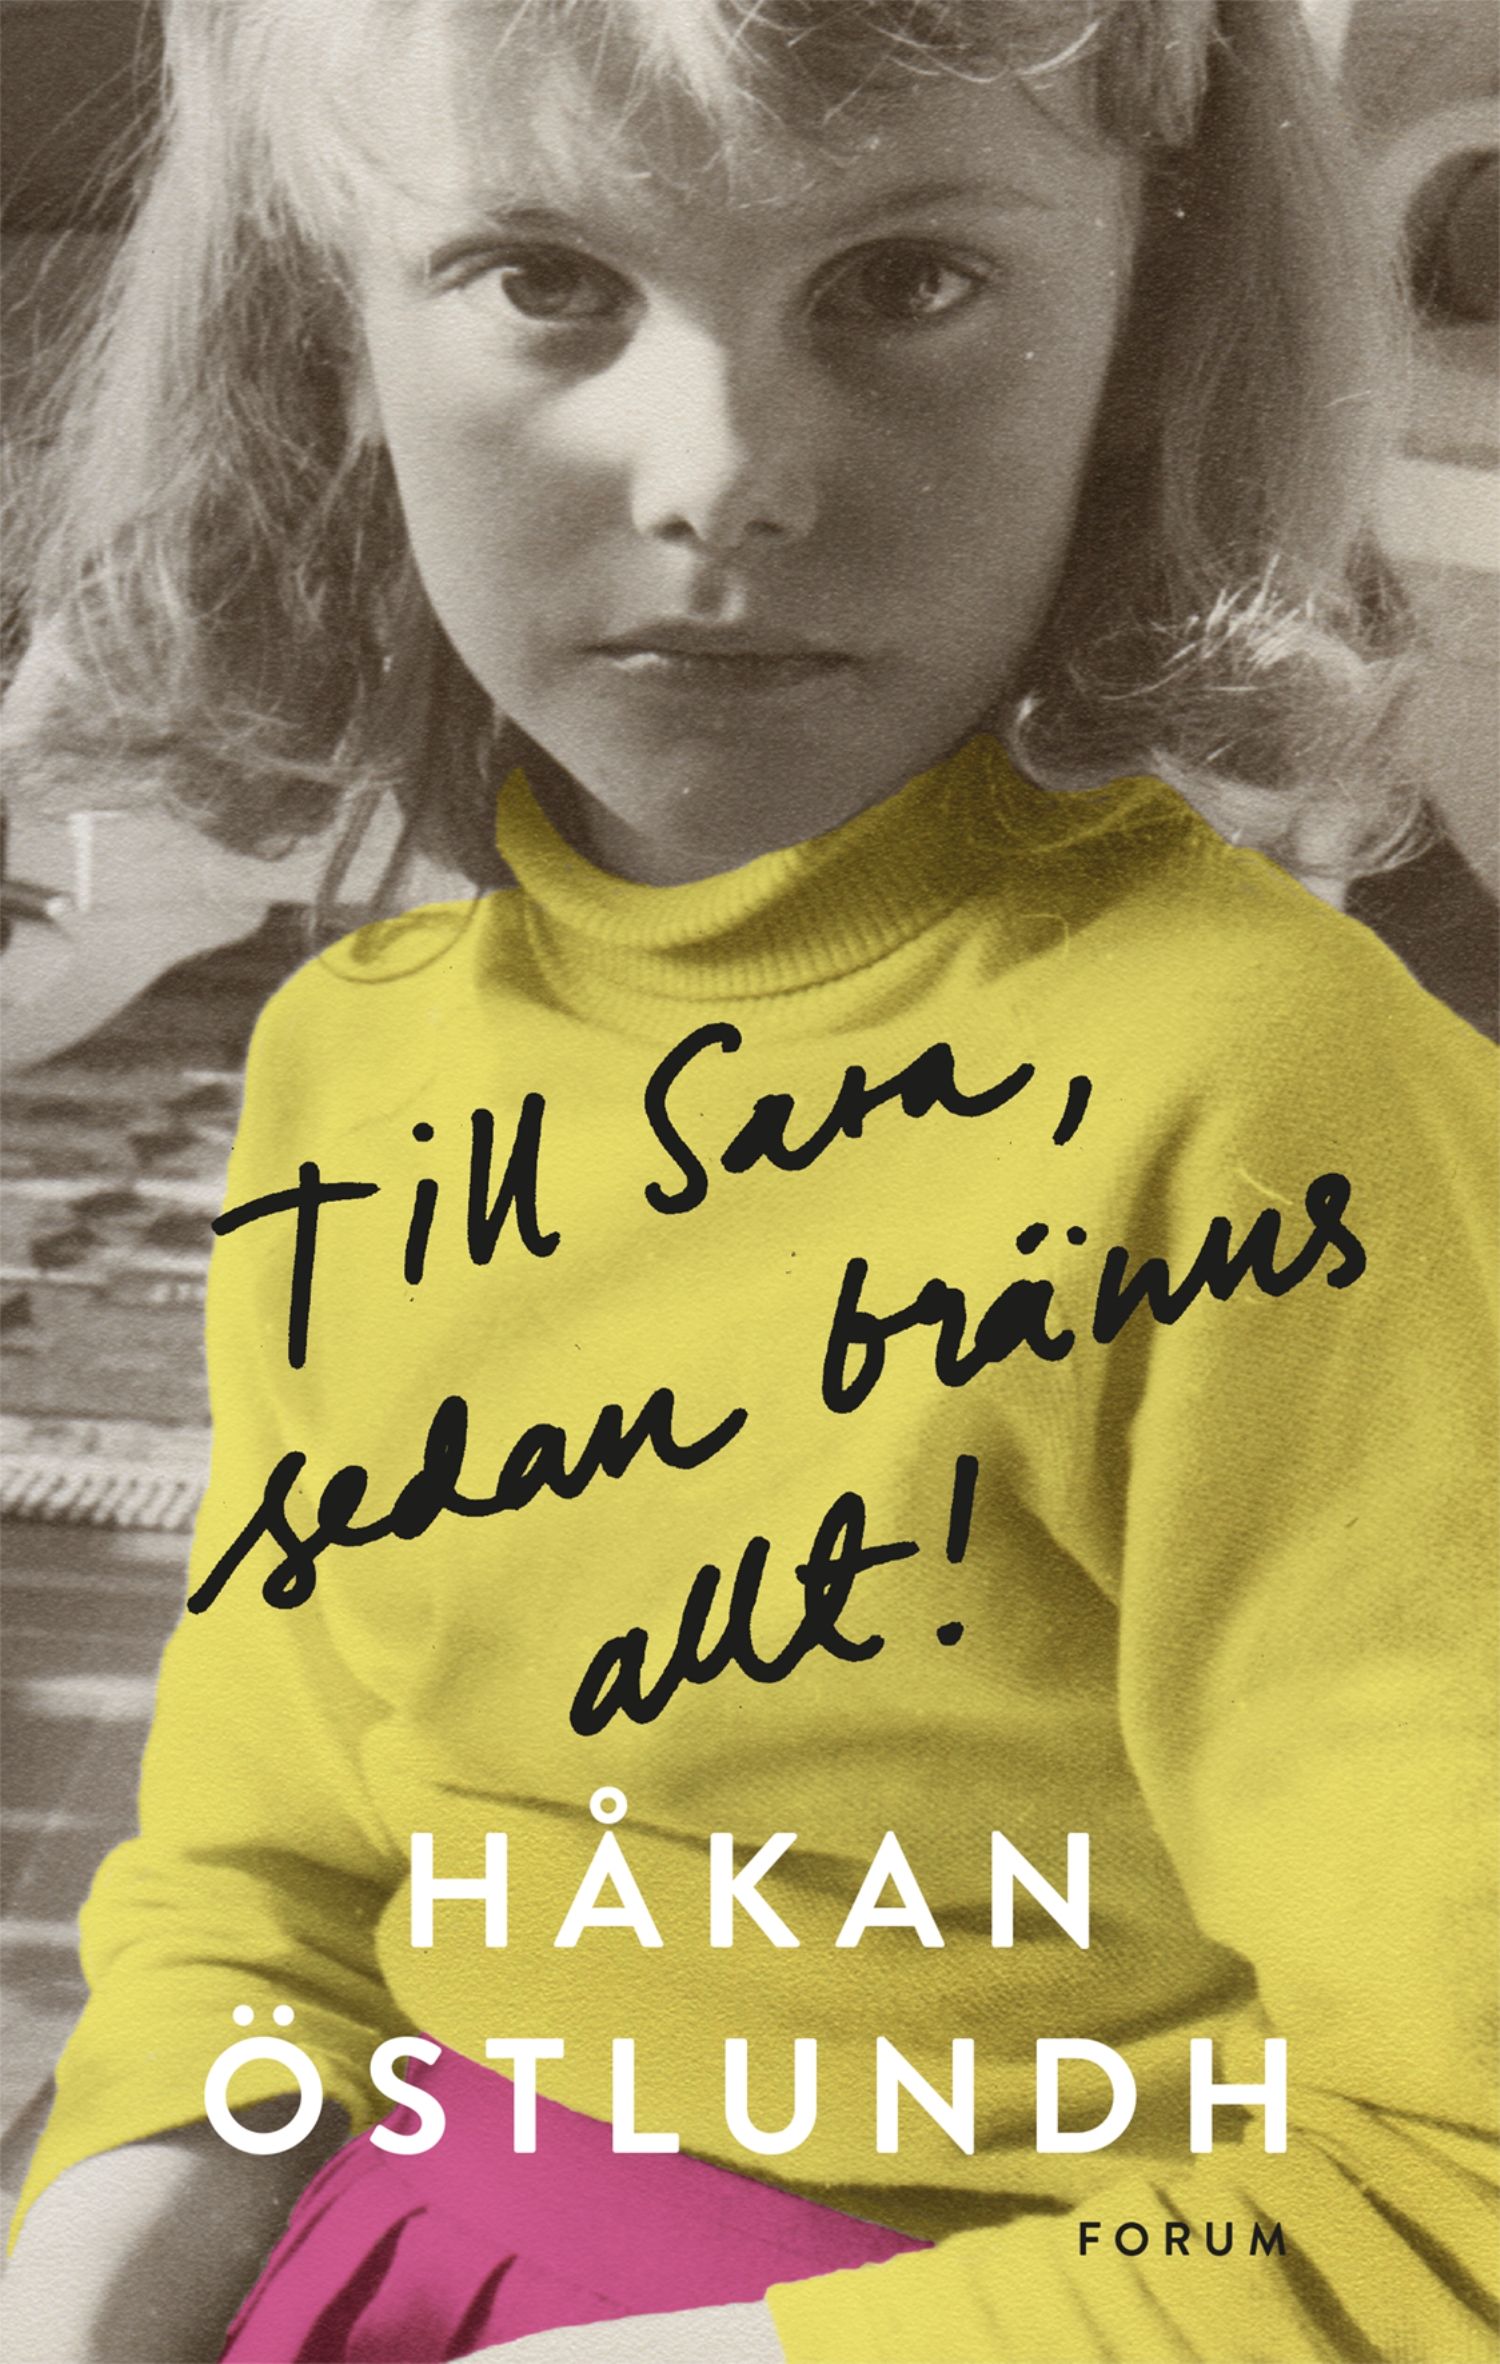 Till Sara, sedan bränns allt!, e-bok av Håkan Östlundh